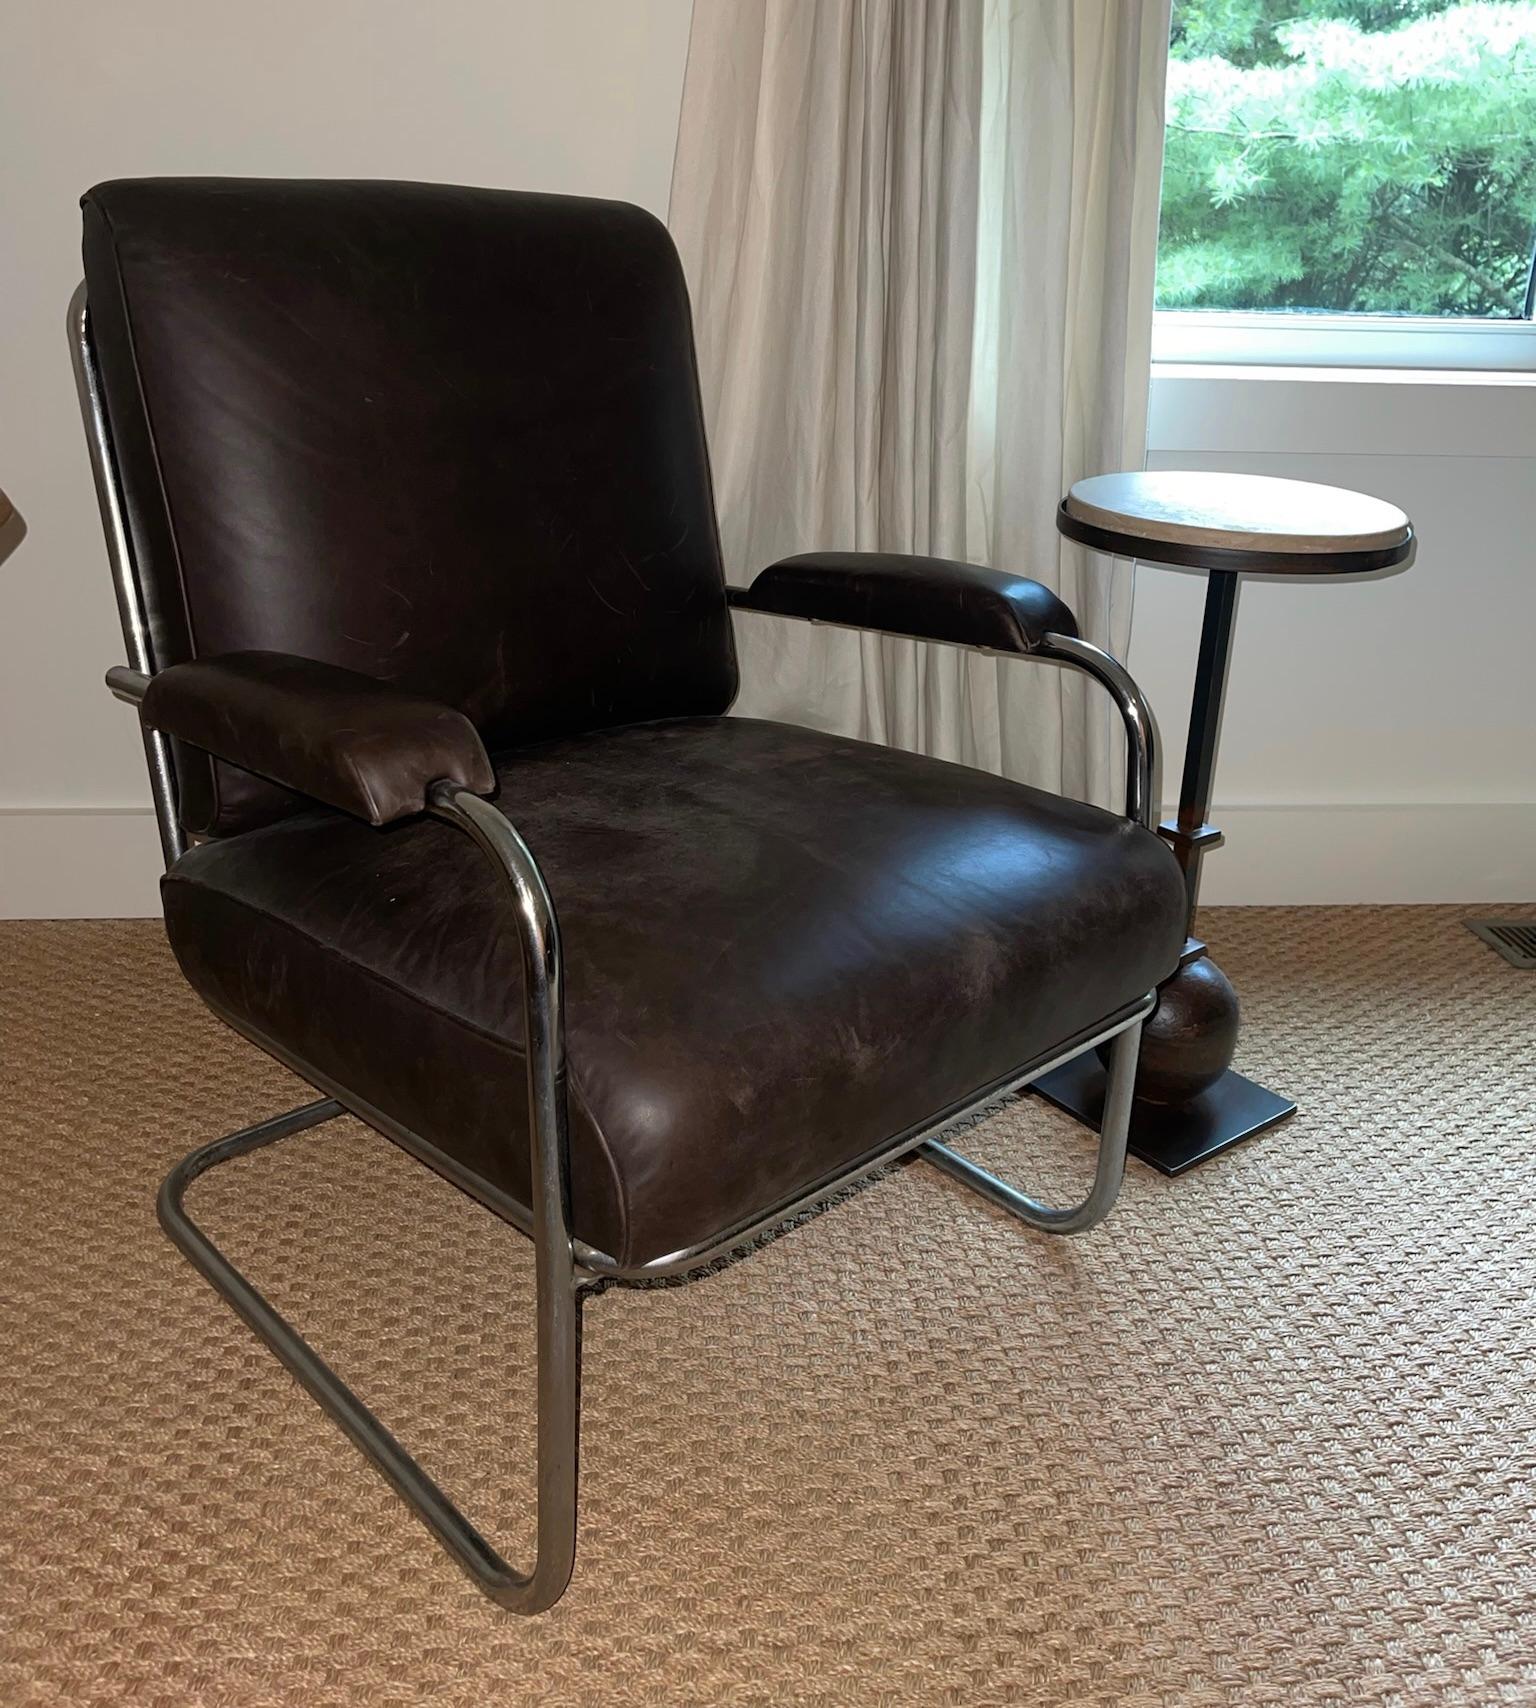 Chaise vintage composée d'une base tubulaire chromée et d'un revêtement en cuir brun foncé.